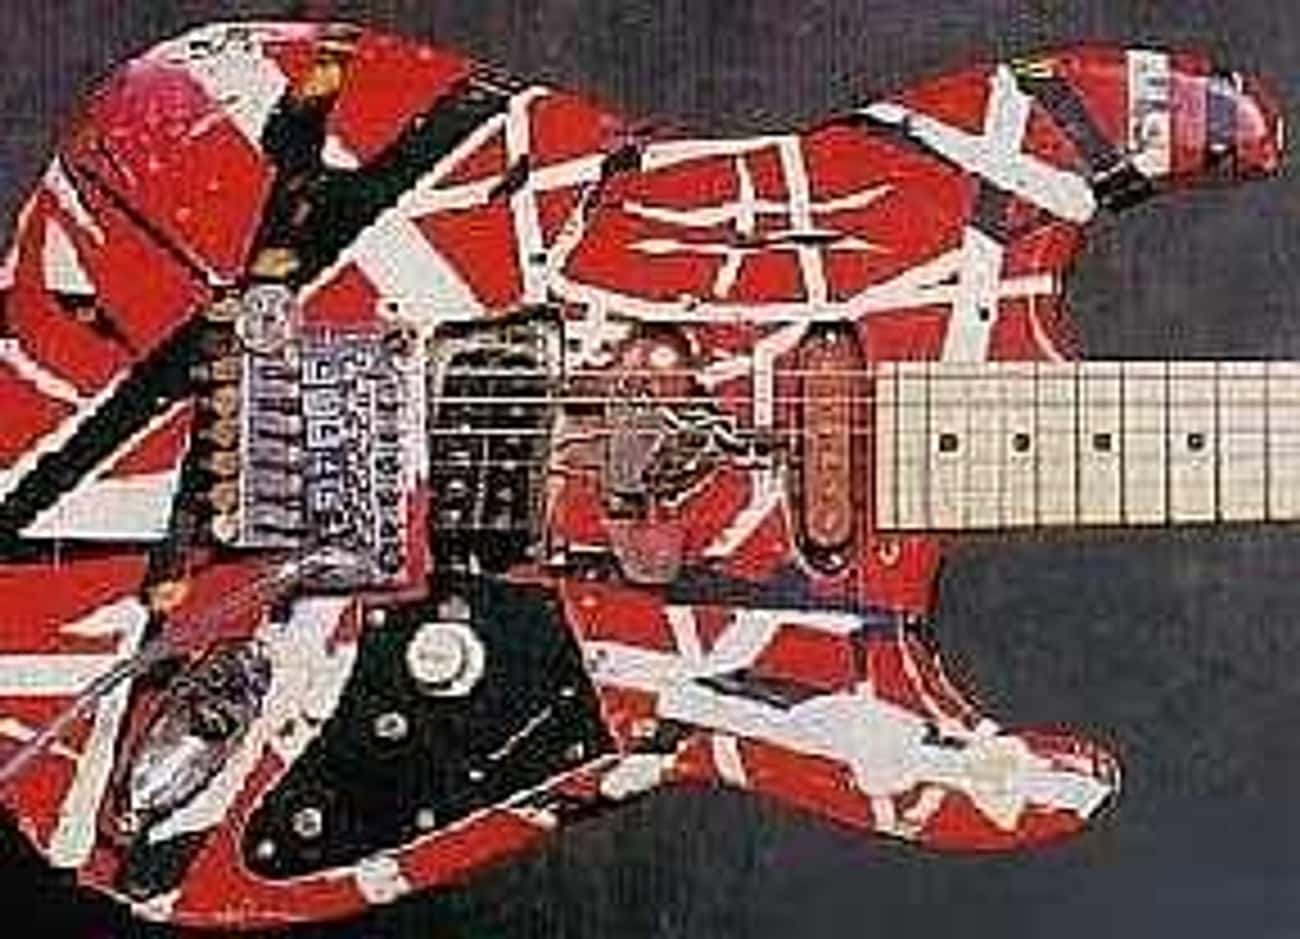 Eddie Van Halen's Frankenstrat